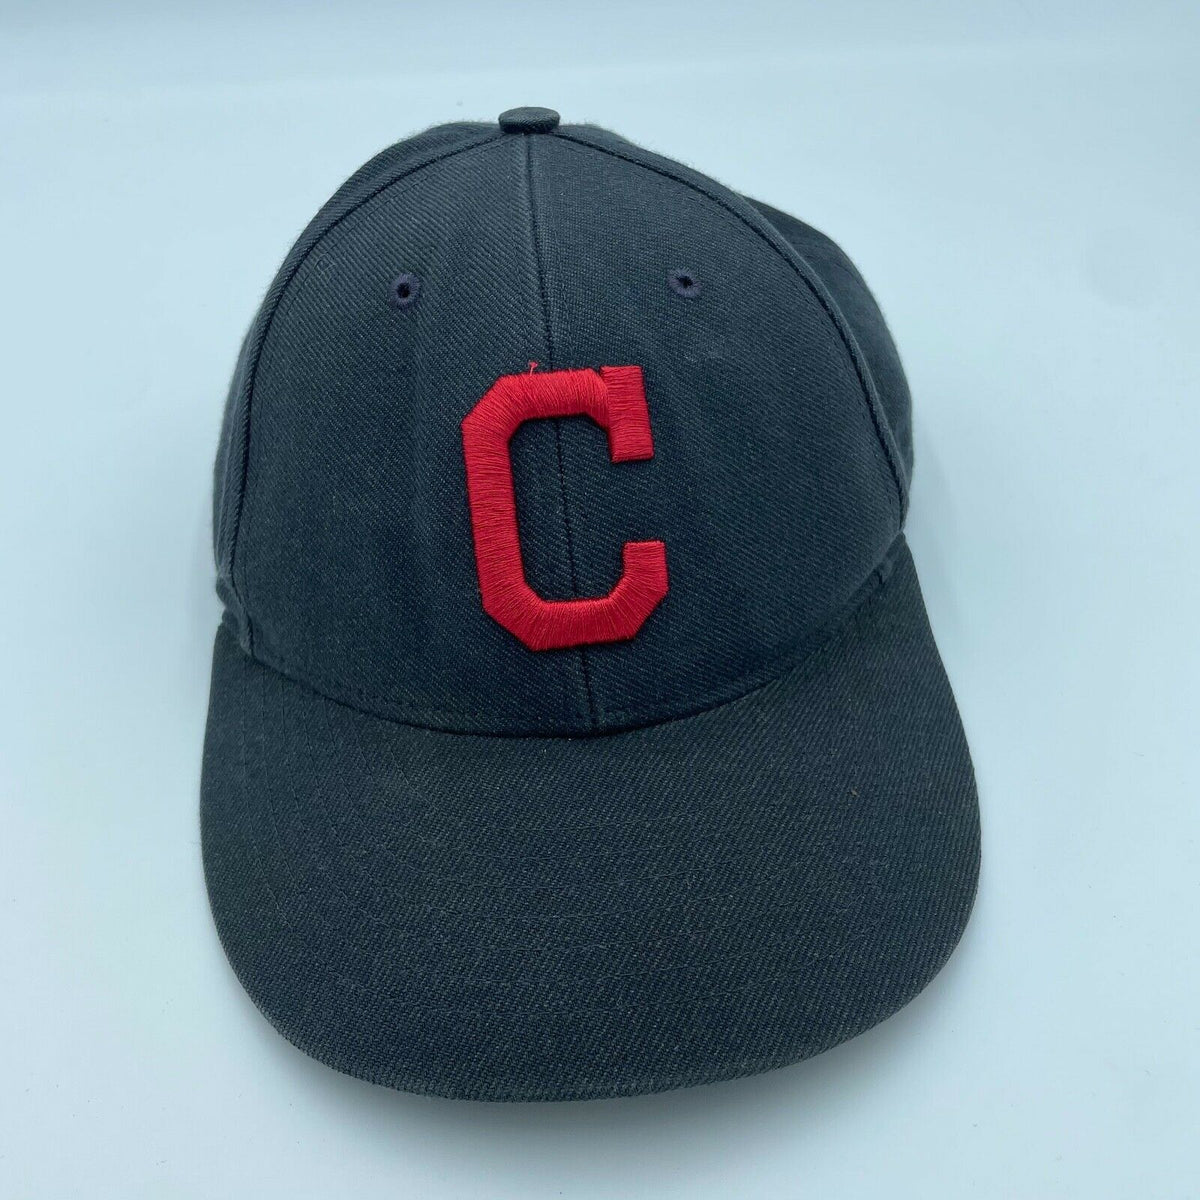 47 Brand Cleveland Indians MLB Fan Shop